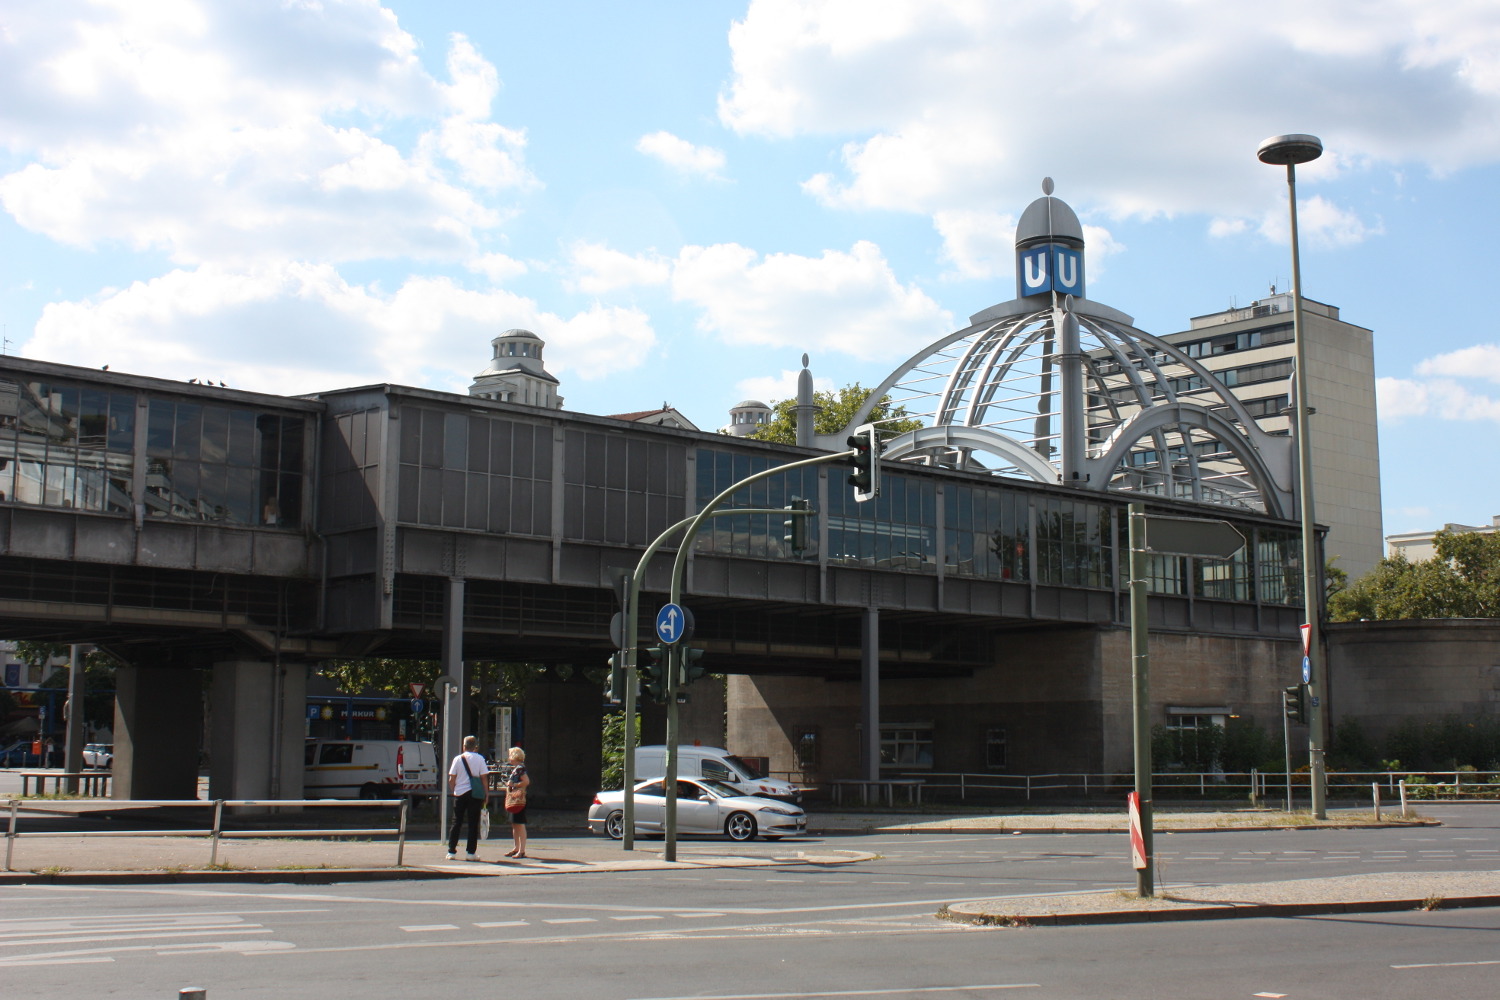 U-Bahnhof überder Straße mit einer Kuppel